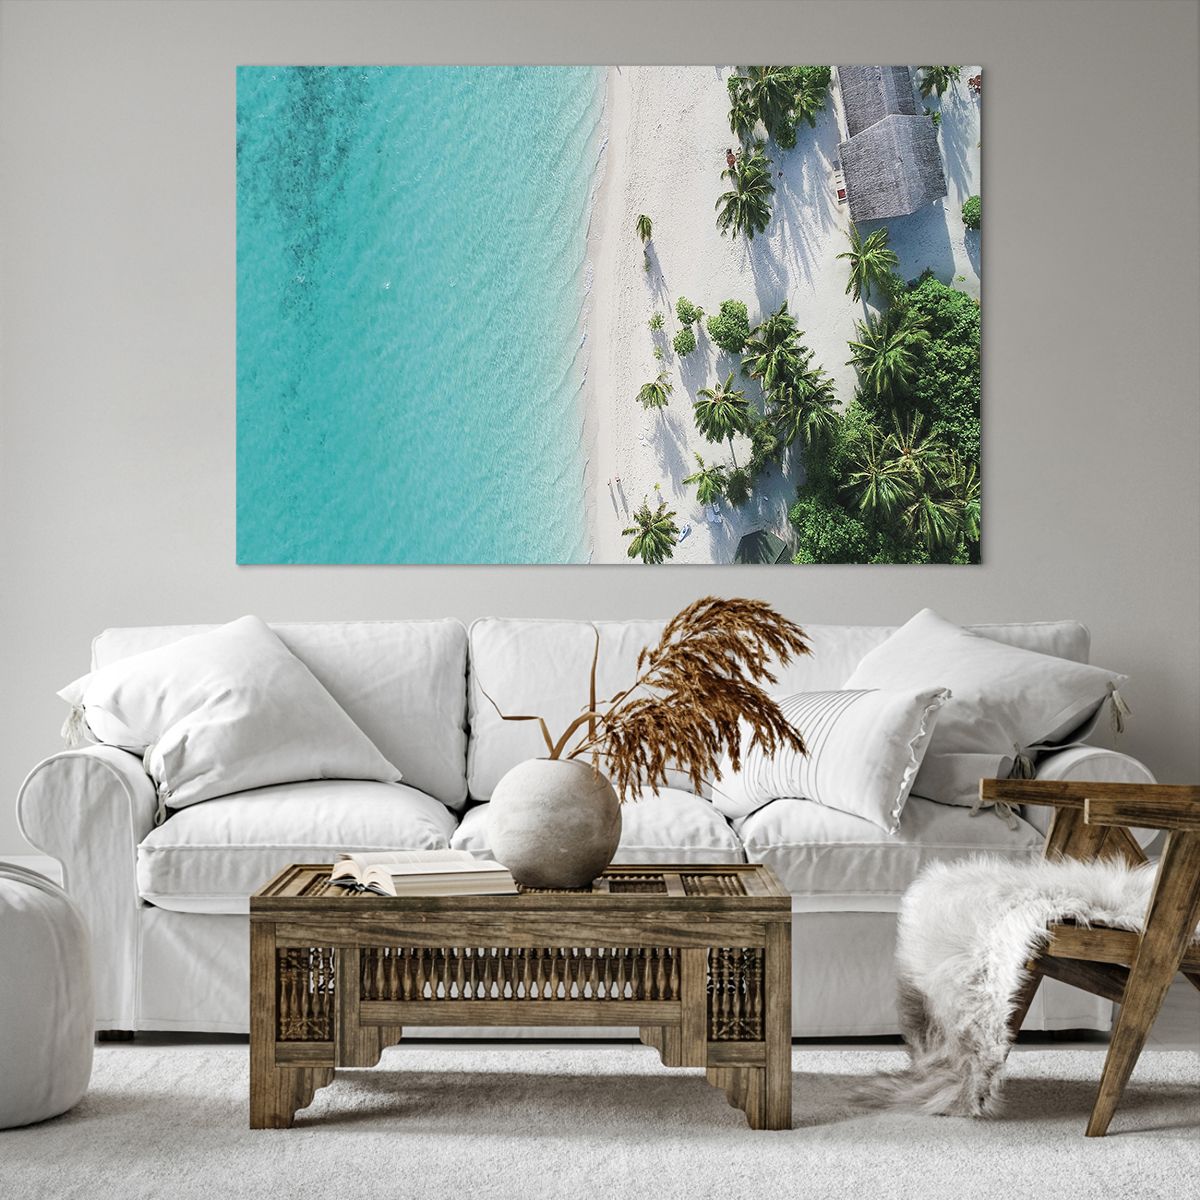 Bild auf Leinwand Landschaft, Bild auf Leinwand Paradiesischer Strand, Bild auf Leinwand Malediven, Bild auf Leinwand Meer, Bild auf Leinwand Reisen